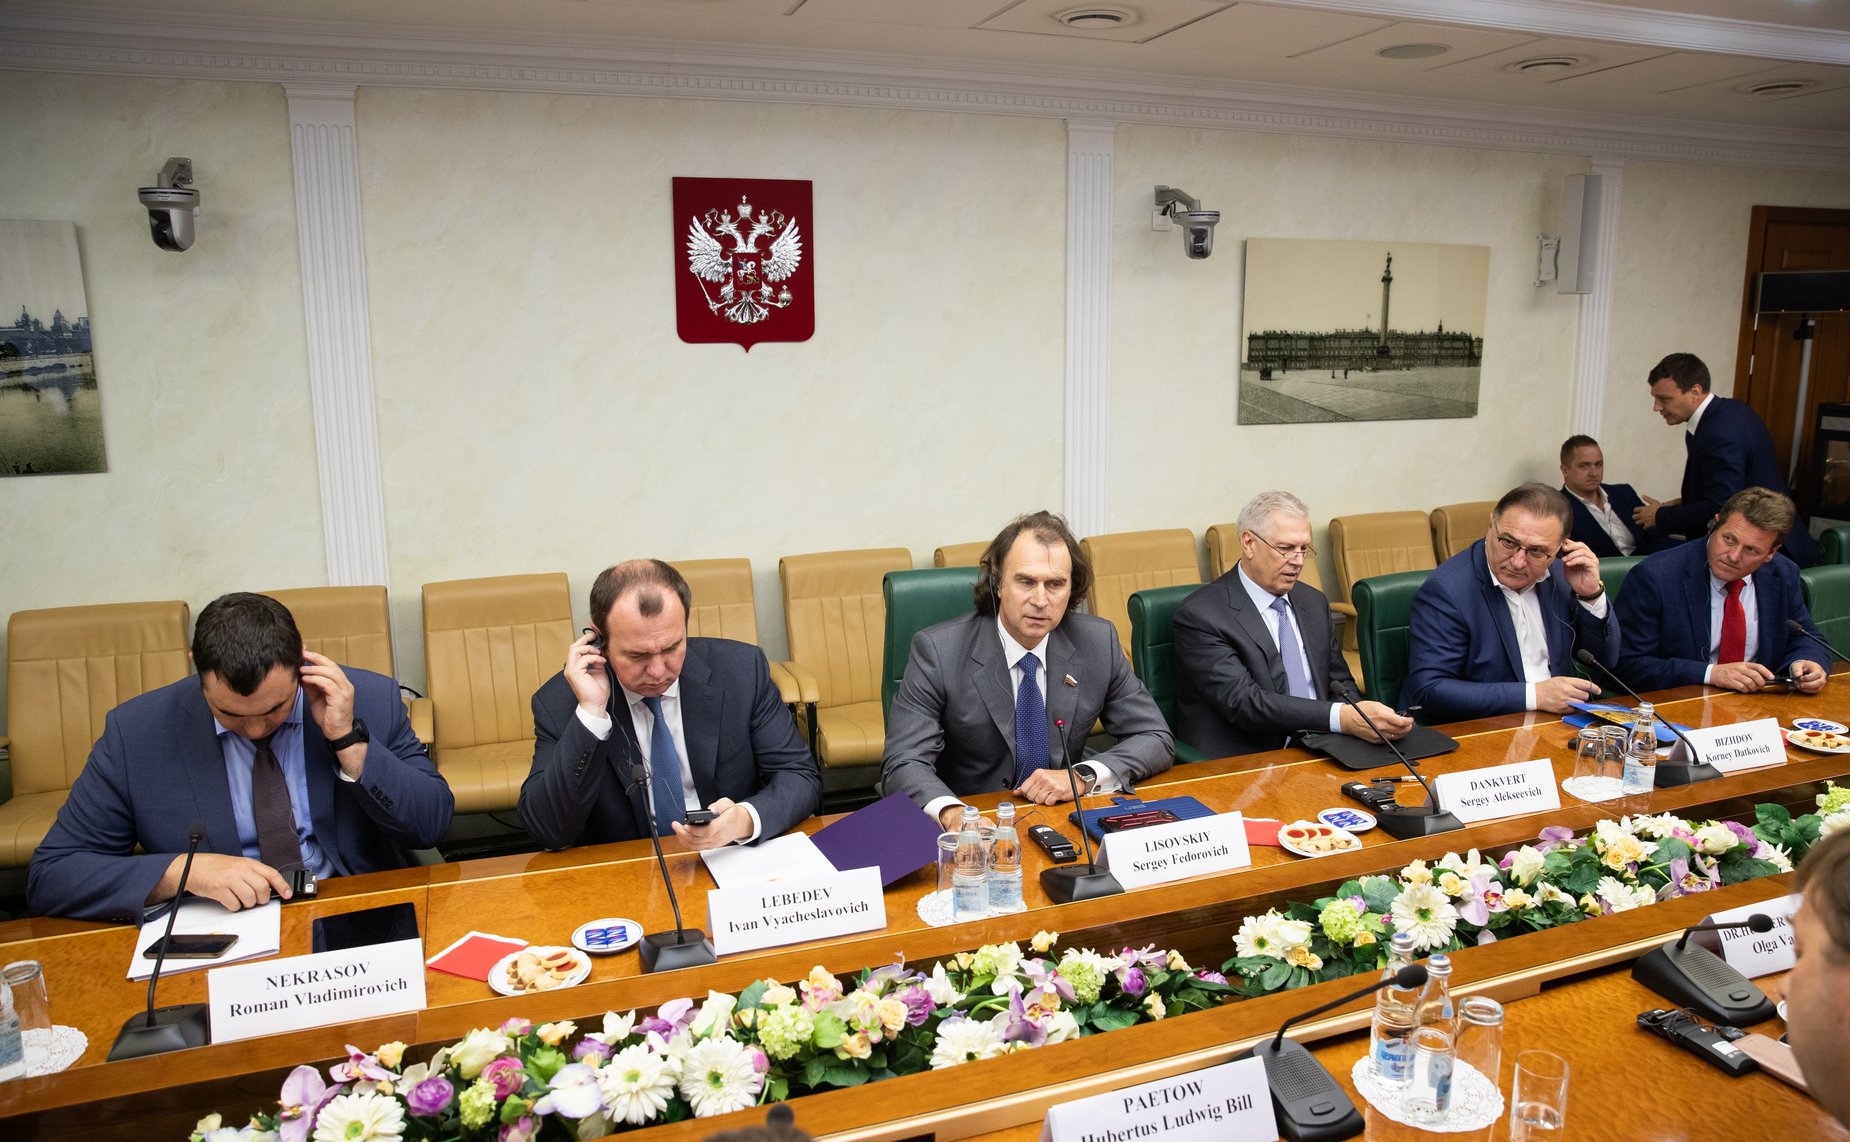 НСА: Корней Биждов в Совете Федерации представил российскую систему агрострахования делегации аграрного бизнеса из Германии